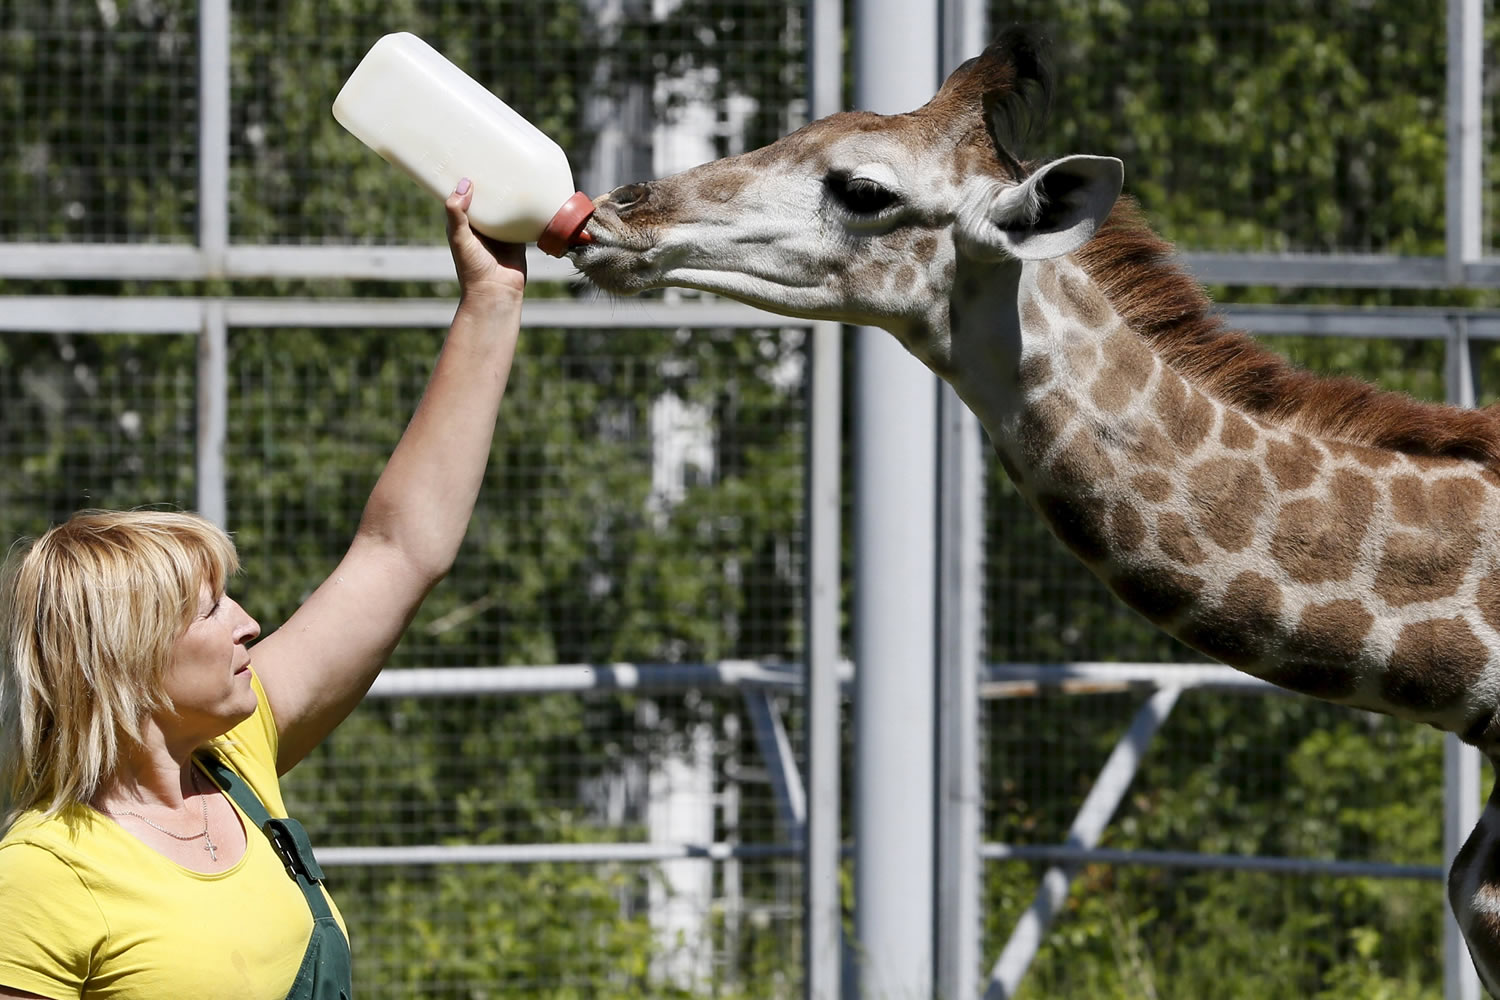 La primera jirafa alimentada con éxito con biberones después de que su madre se negara a hacerlo